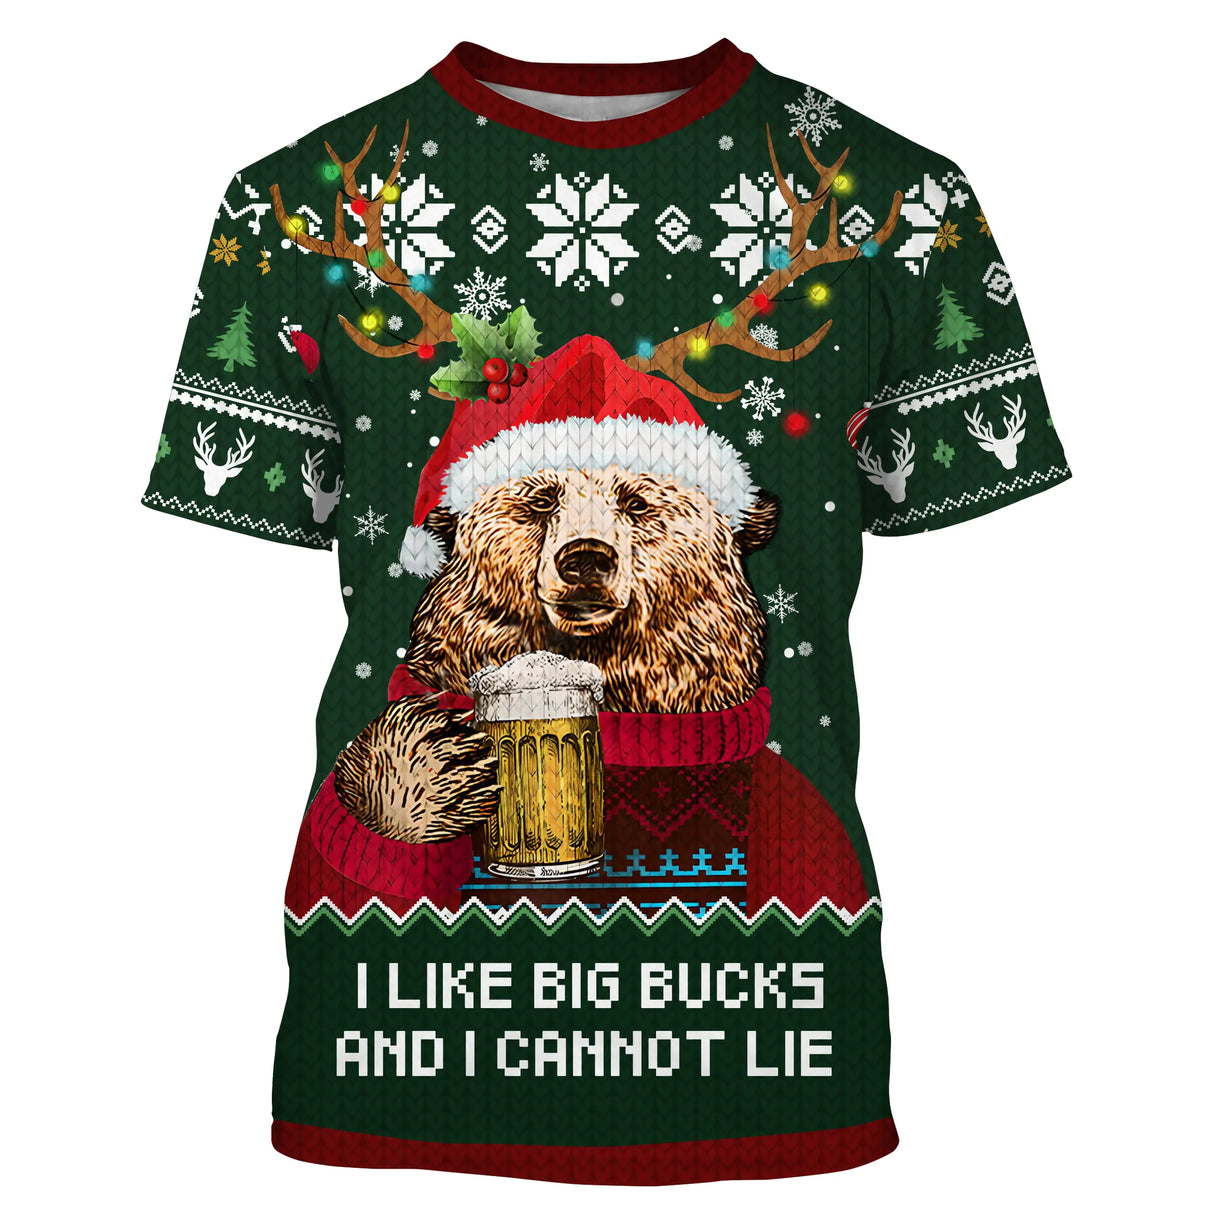 Suéter navideño verde, oso bebe cerveza, patrón Me gusta Big Bucks, regalo de Navidad familiar - CT07112237